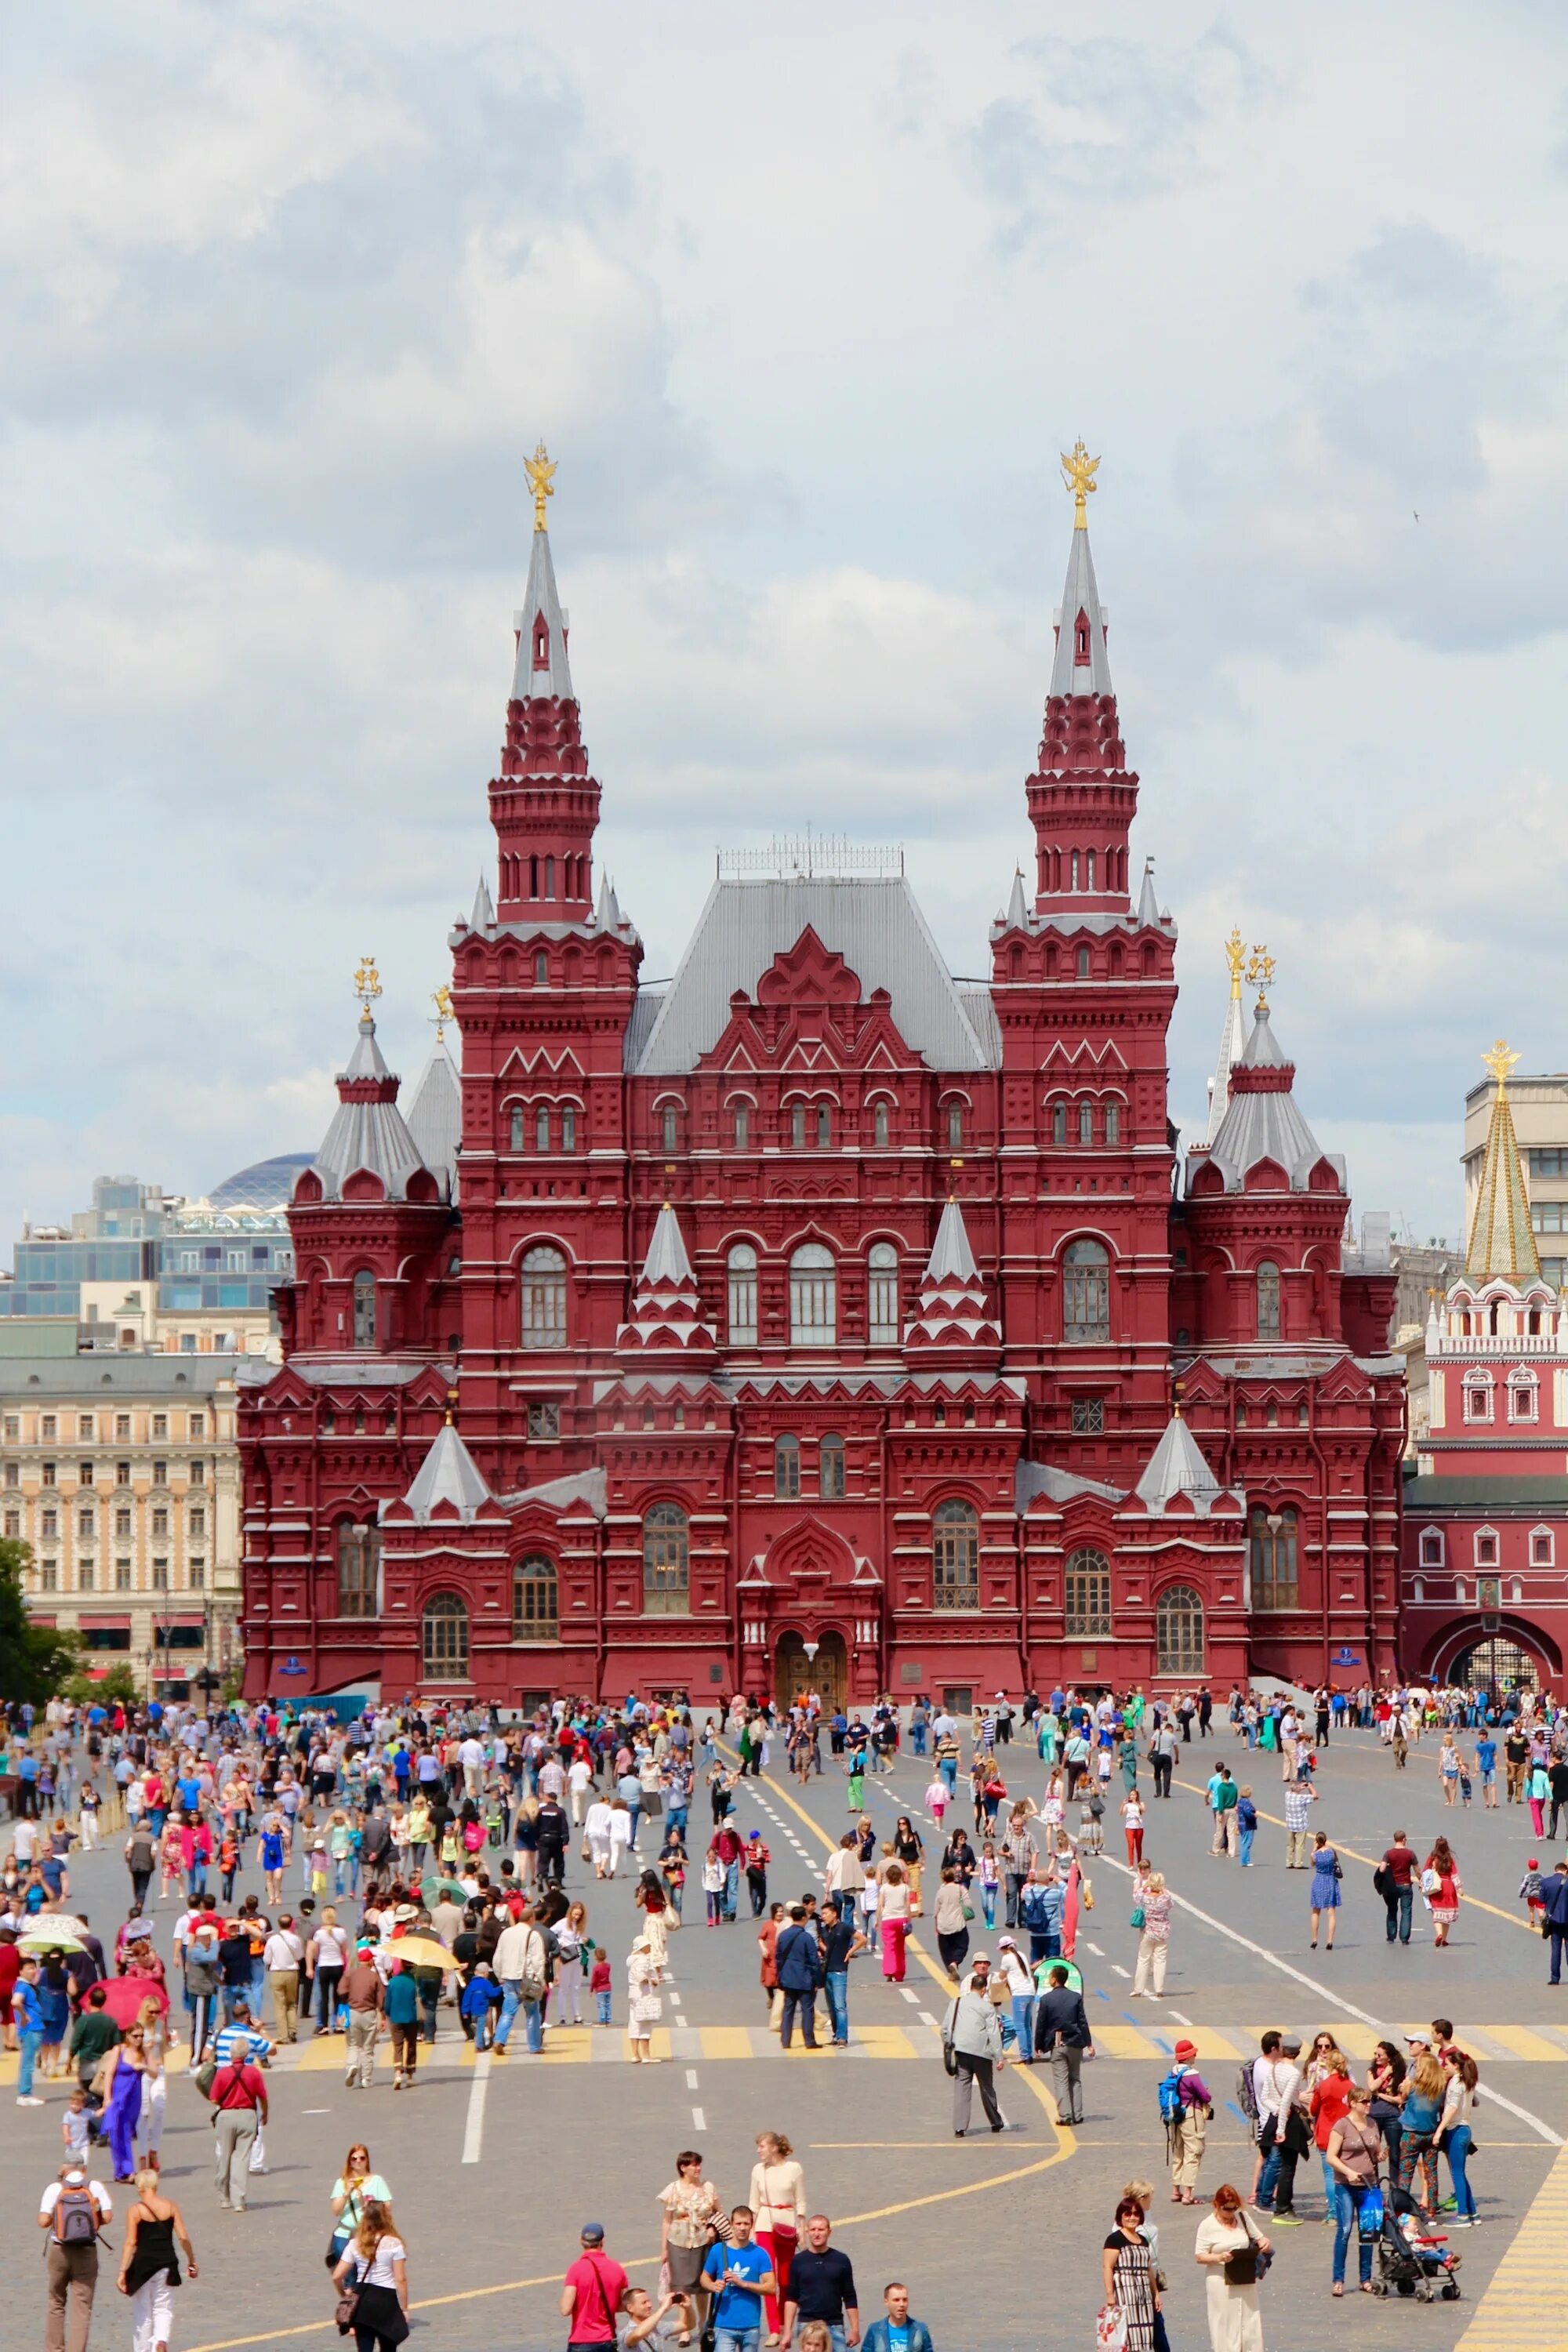 Площадь красной площади в Москве. Центр Москвы красная площадь. Красное здание на красной площади в Москве. Krasnoy Ploshad площадь красной.